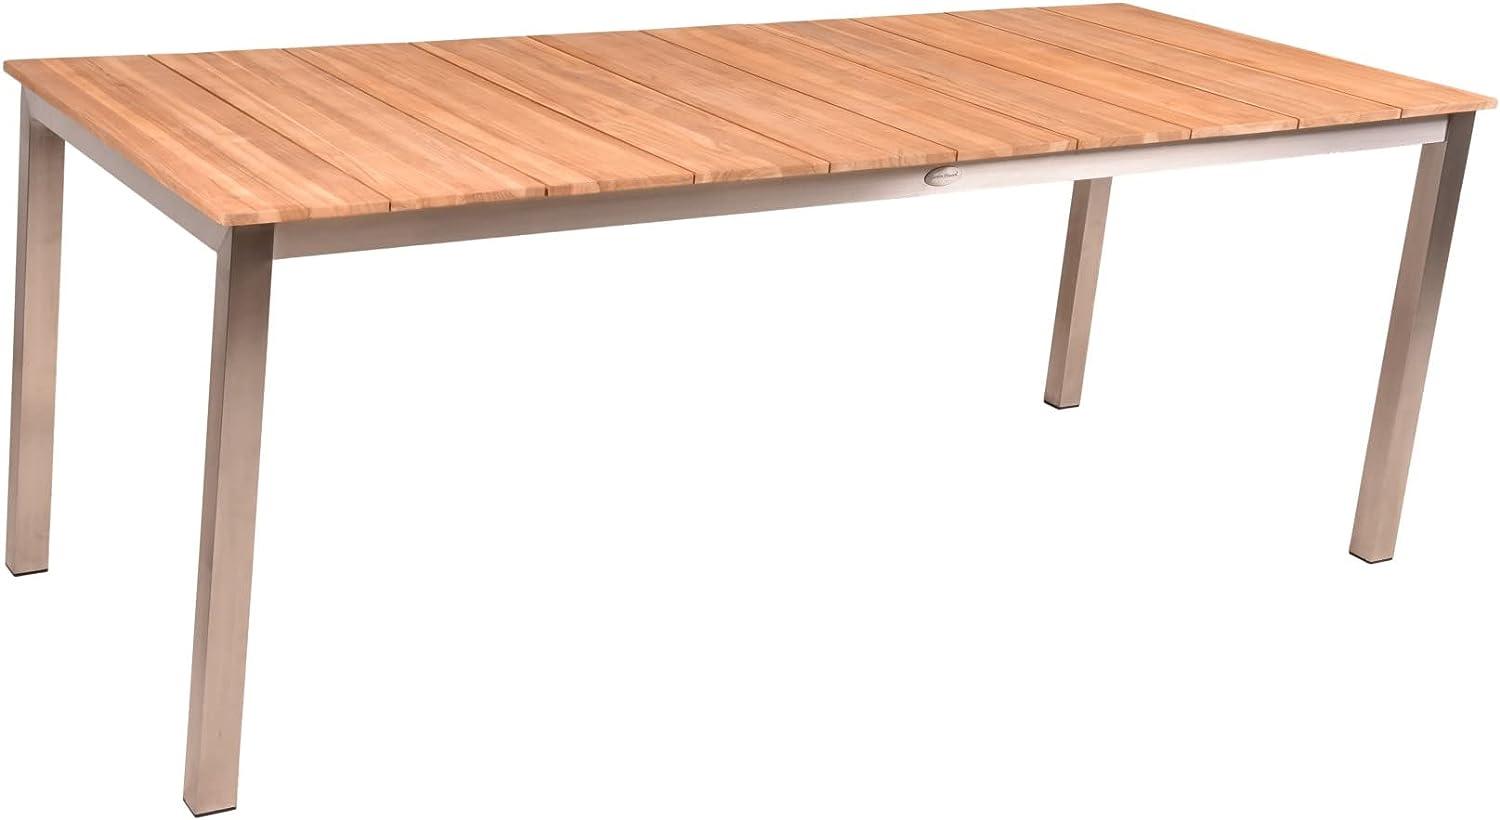 Tisch DALLAS 200cm Edelstahl Teak Gartentisch Esstisch Garten Möbel Outdoor Holz Bild 1